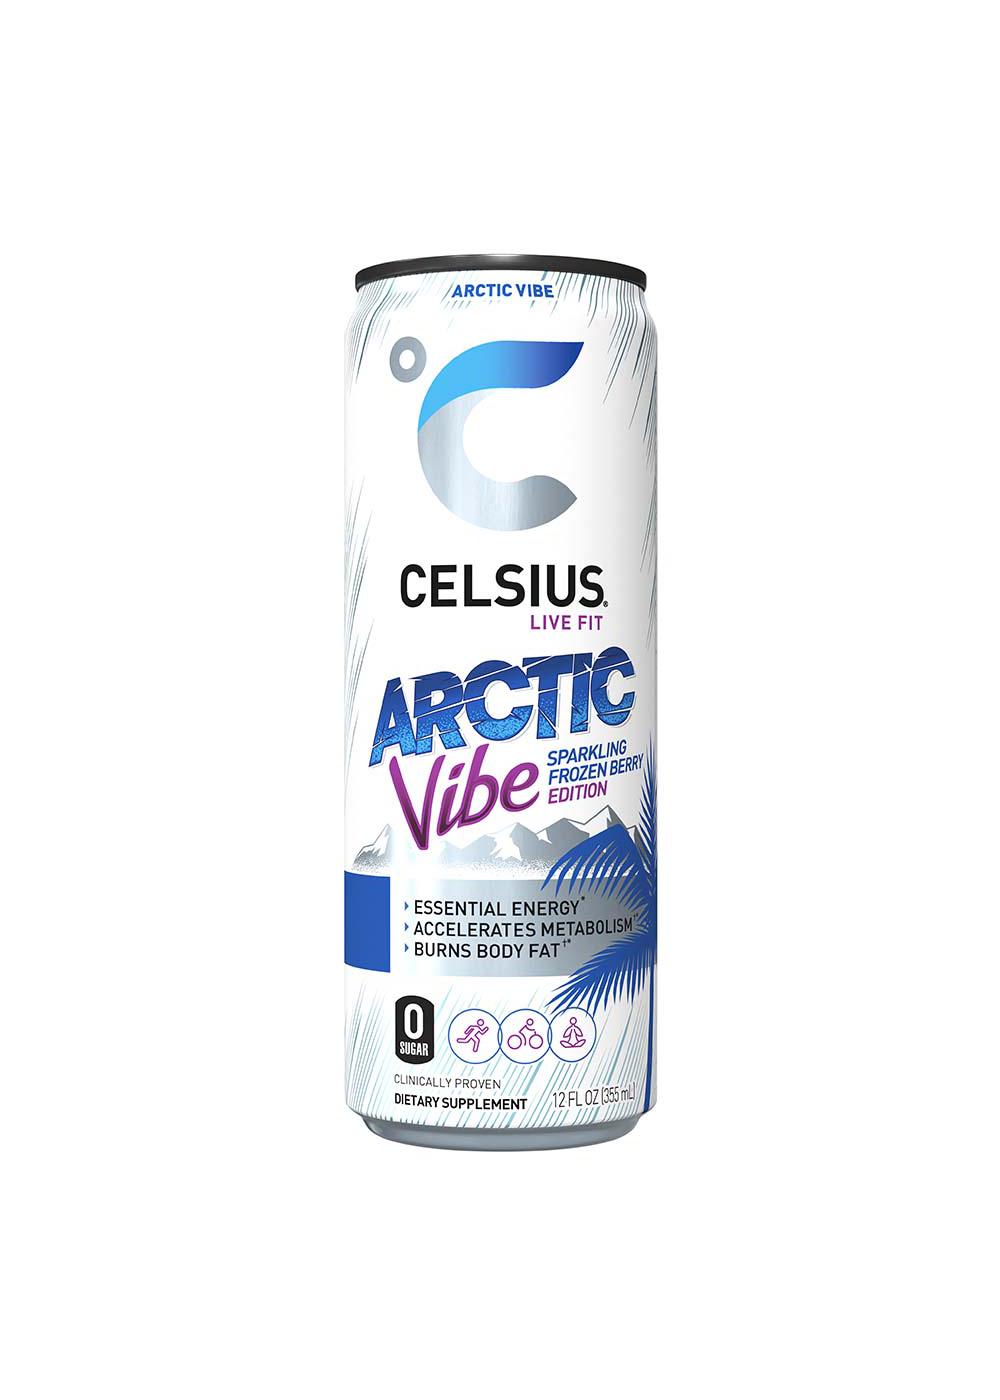 Celsius Live Fit Arctic Vibe Sparkling Frozen Berry 12 oz; image 2 of 2